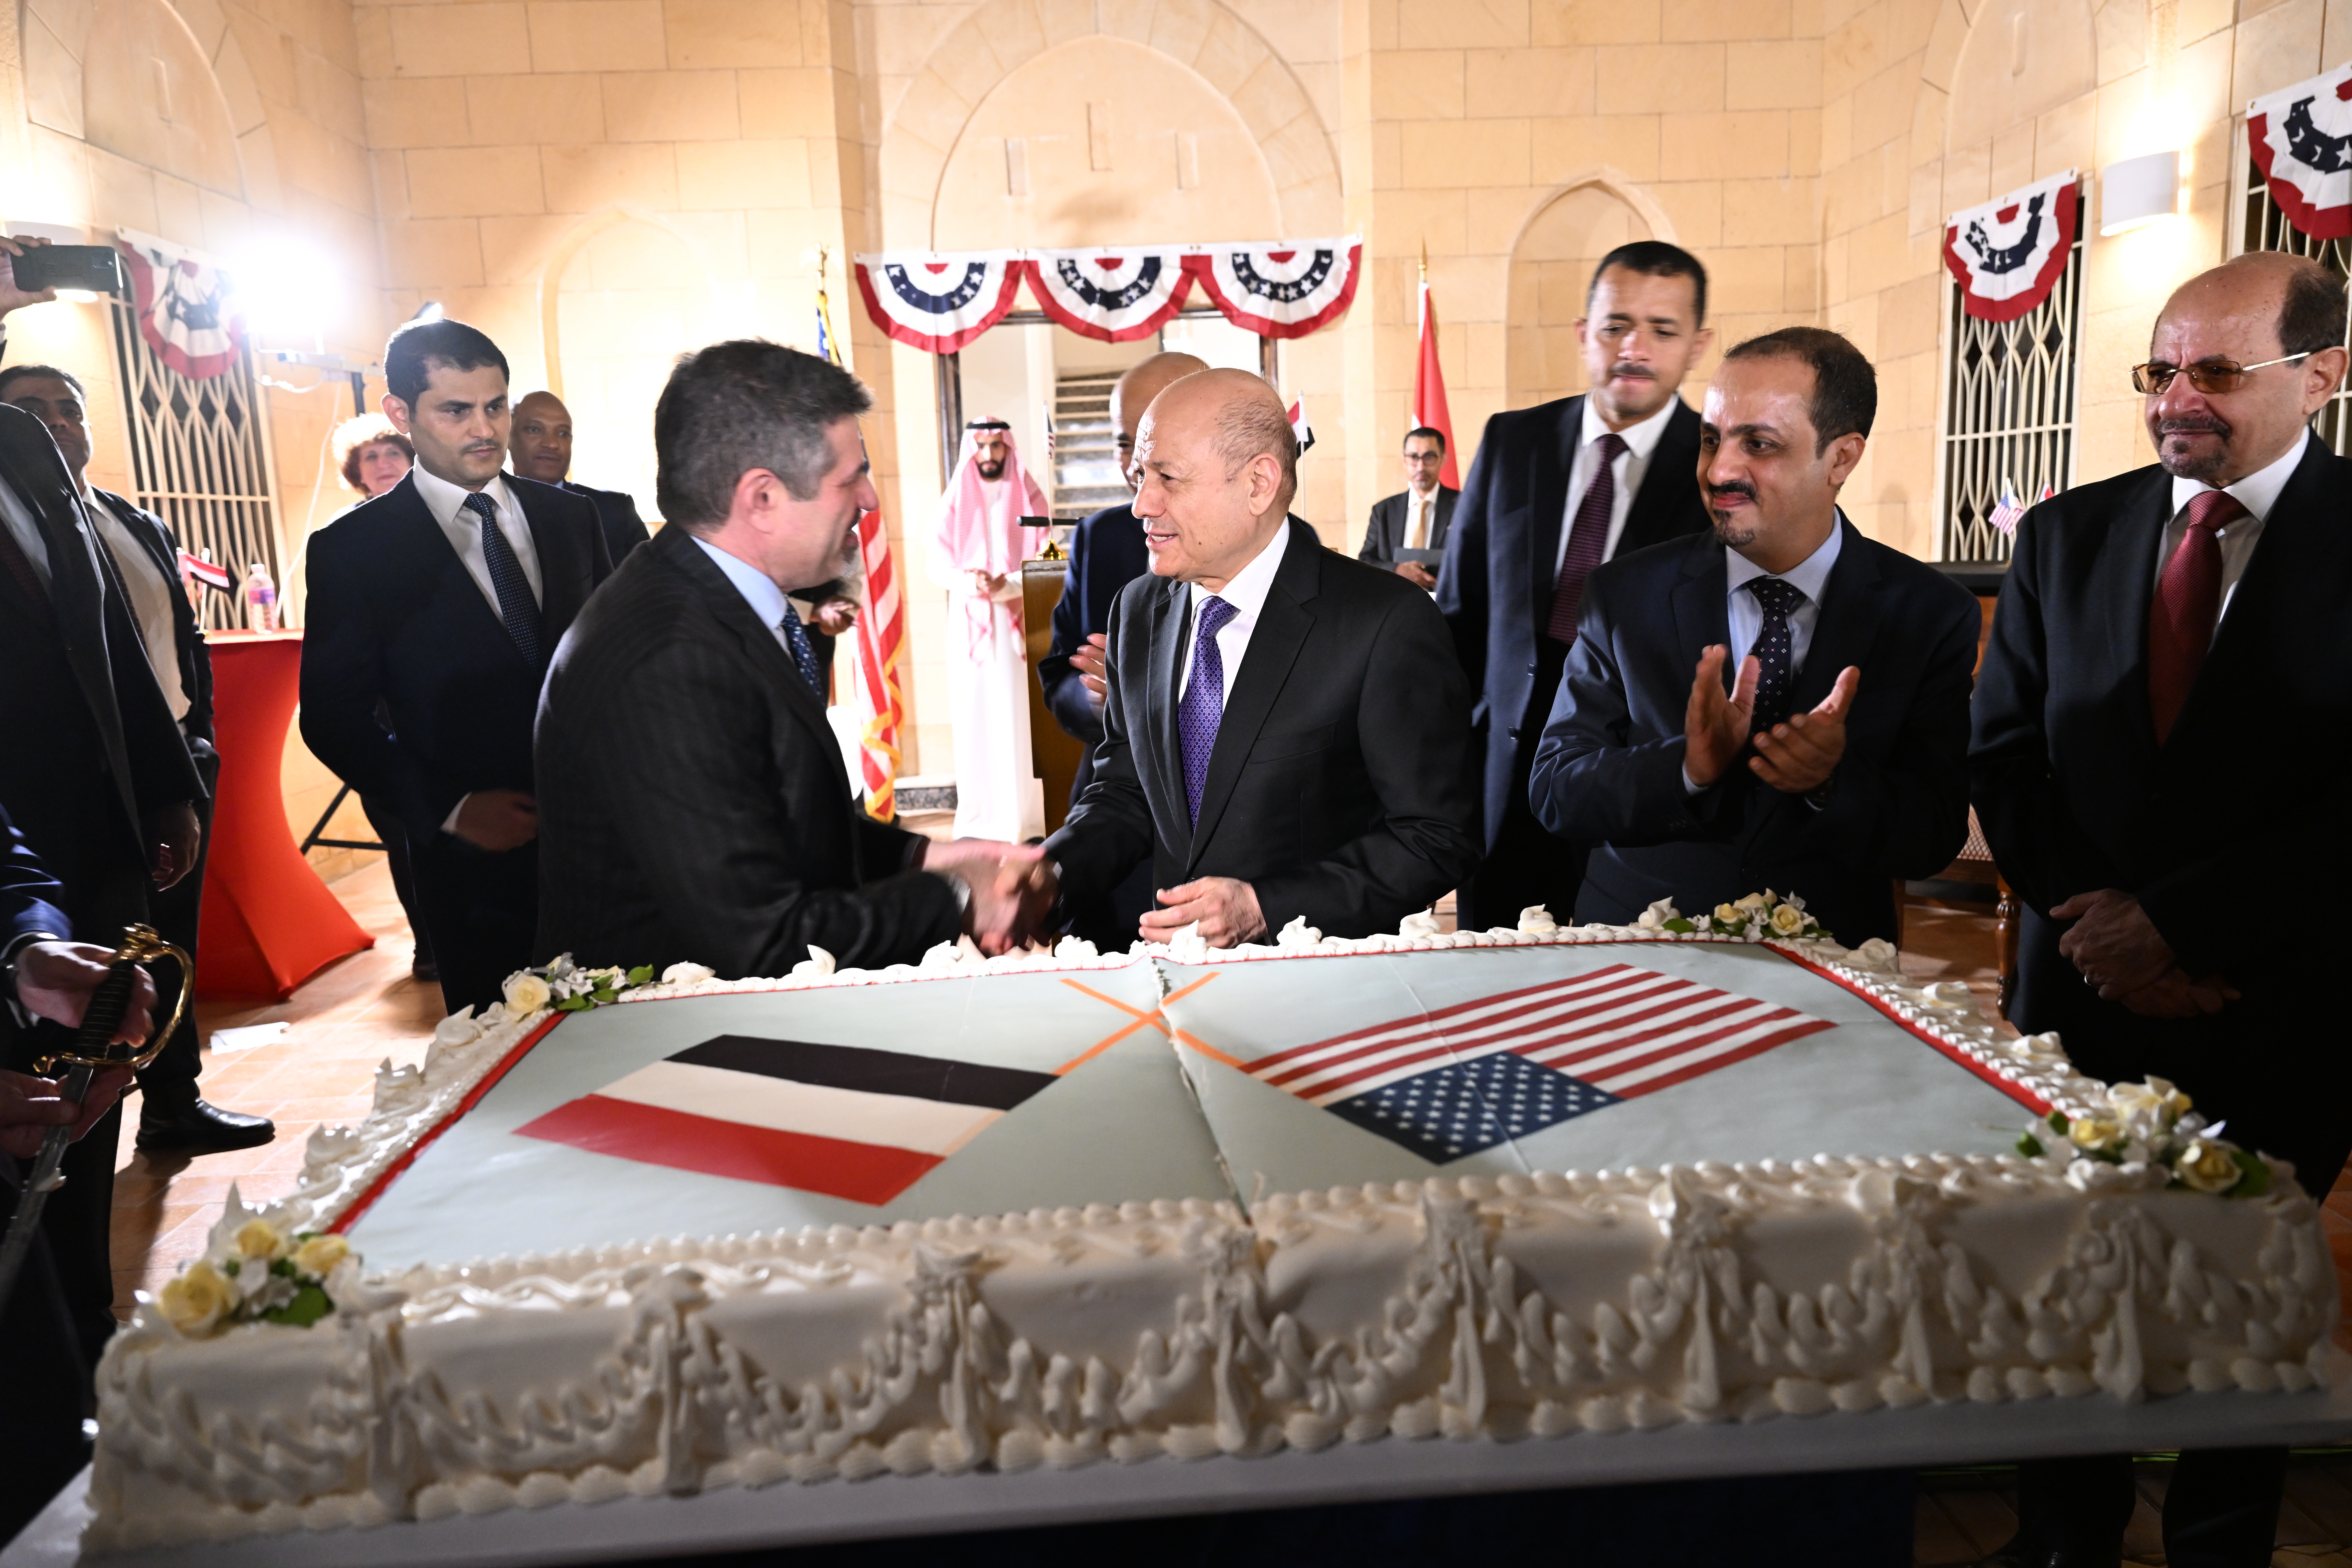 احتفالا بالذكرى 64 لتأسيس أول بعثة دبلوماسية أمريكية في اليمن